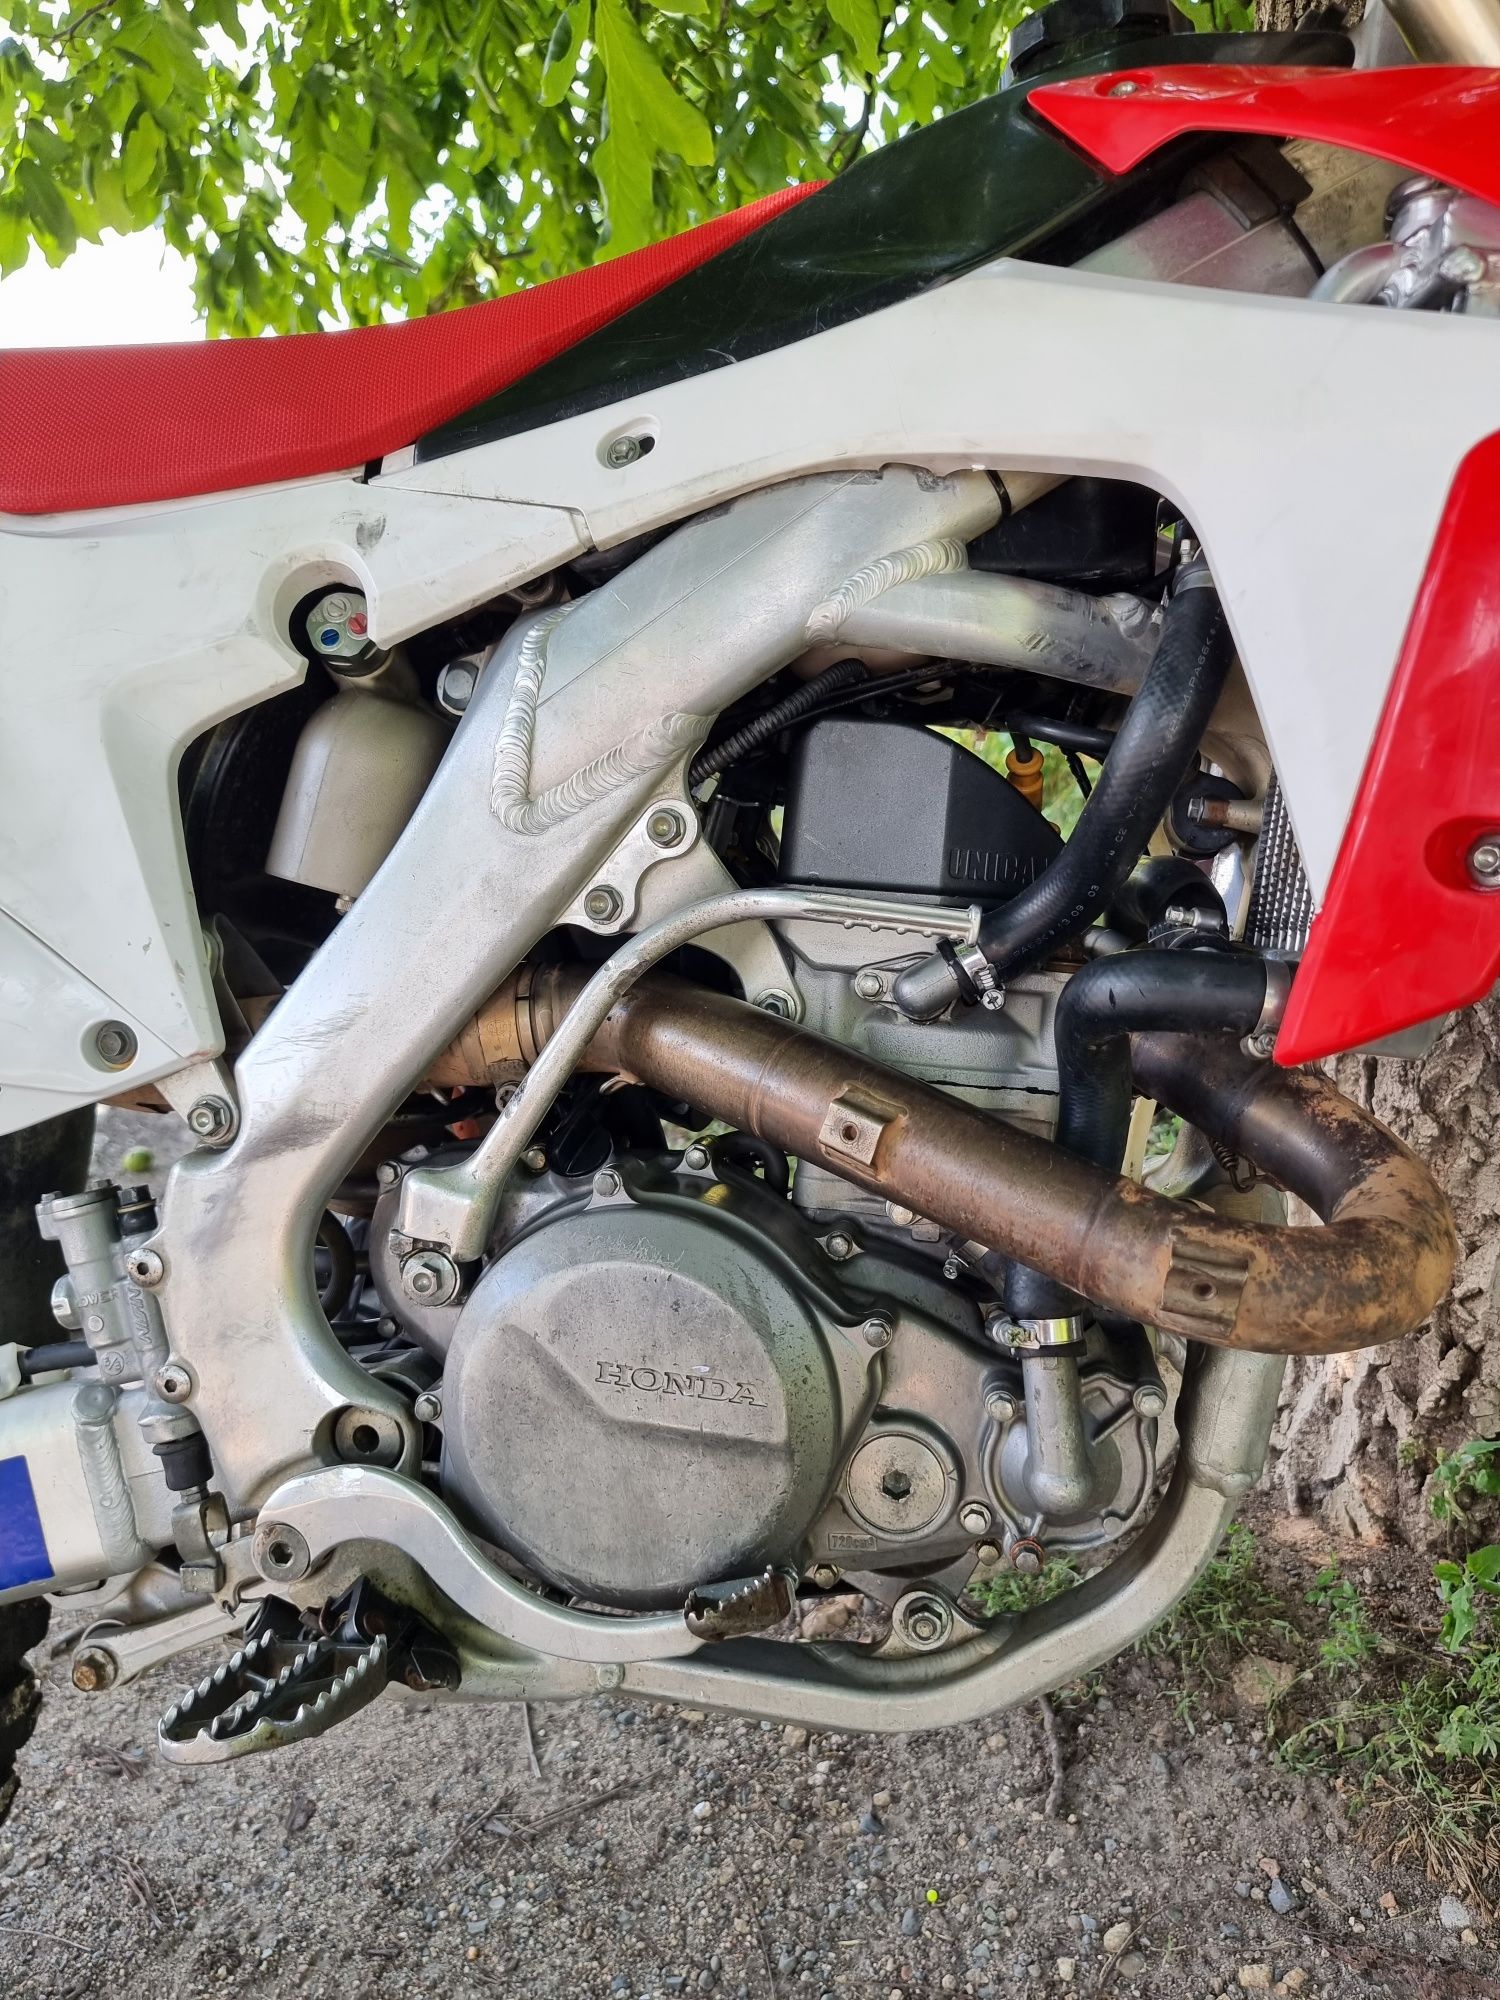 Honda crf450 2015 
Акрапович задна генерация, преден аморти